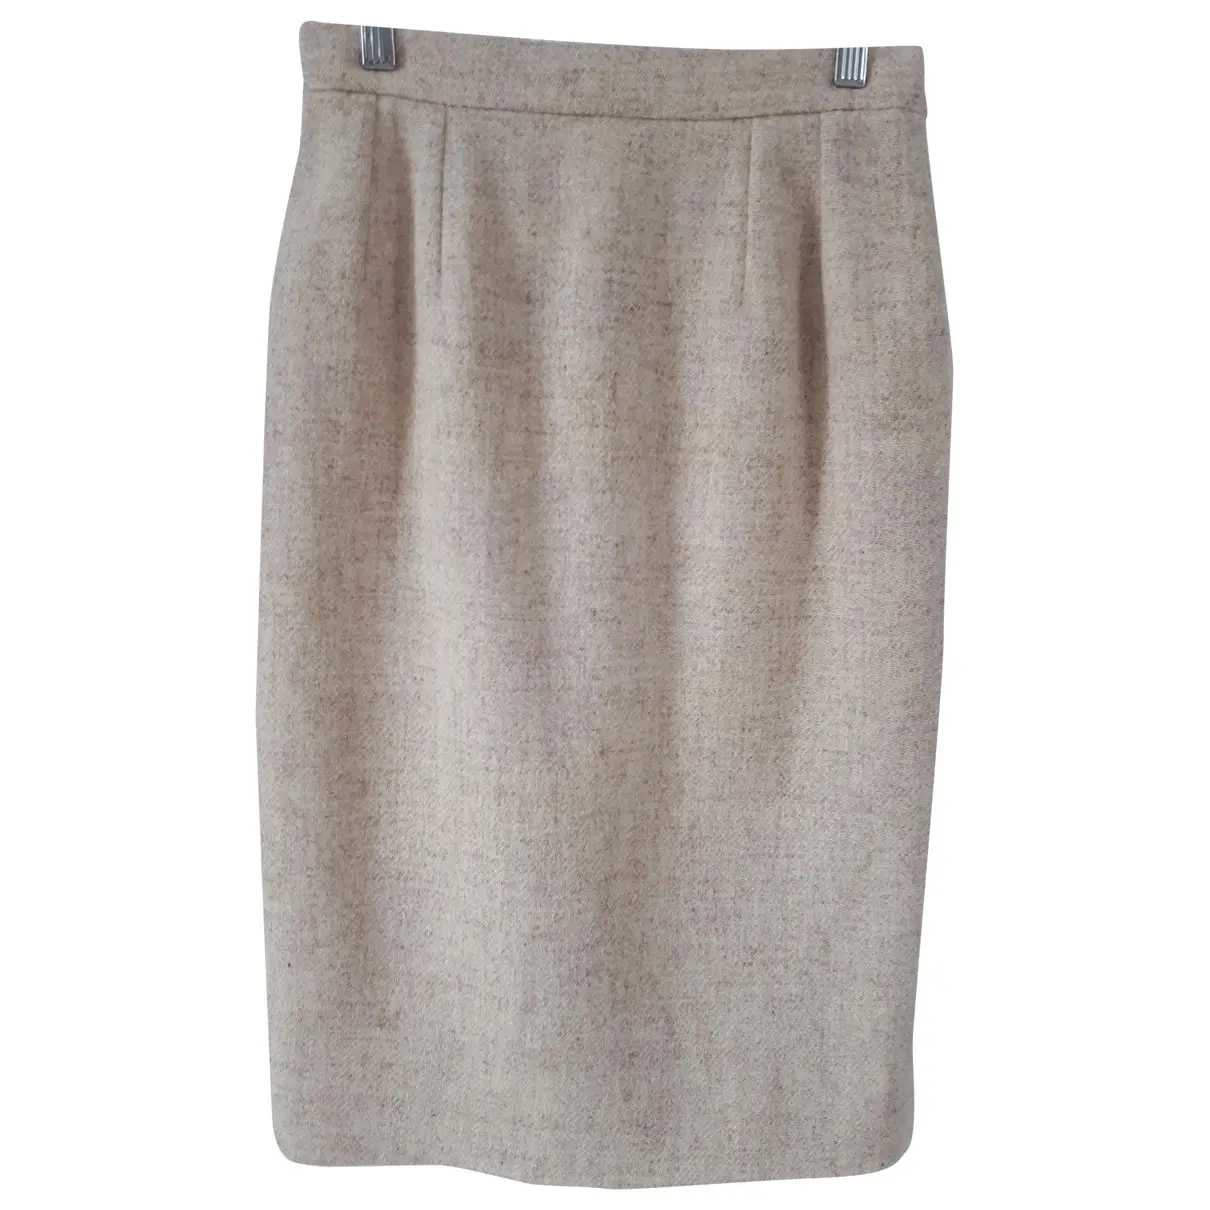 Tweed skirt suit Inès De La Fressange Paris - Vintage